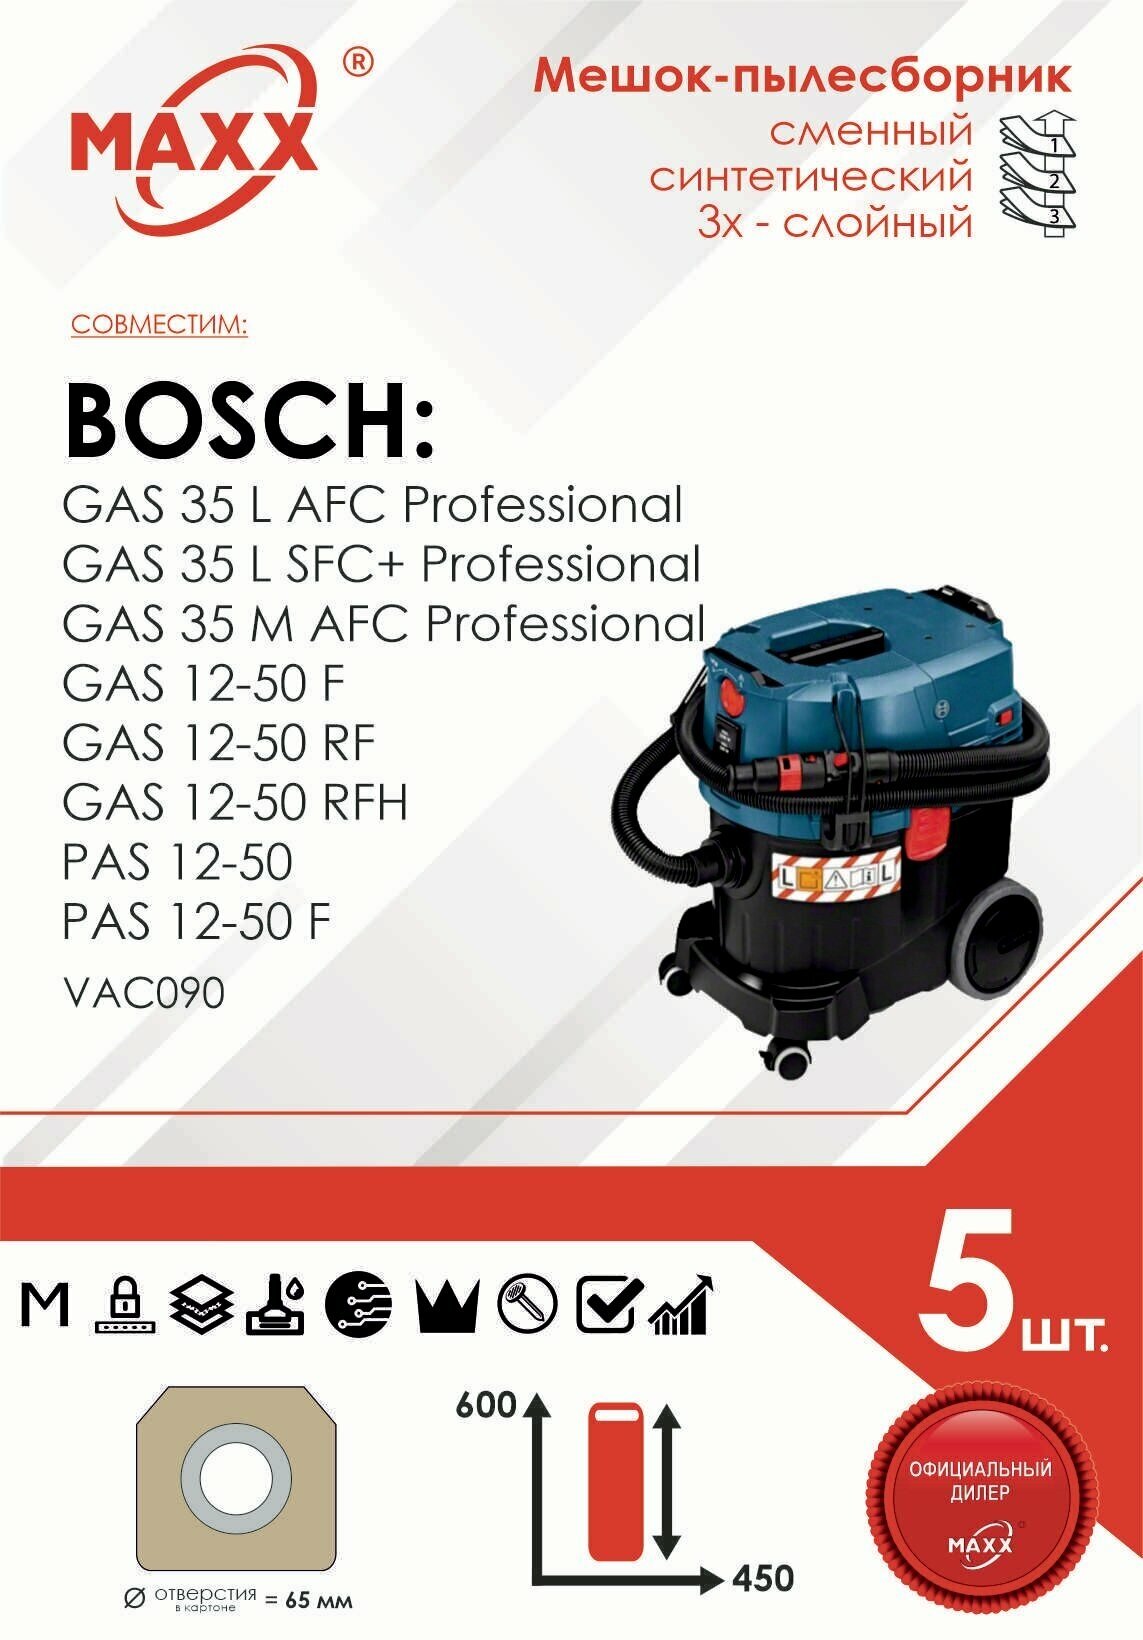 Мешок - пылесборник 5 шт. для пылесоса Bosch GAS 35 L AFC Professional, 06019C3000